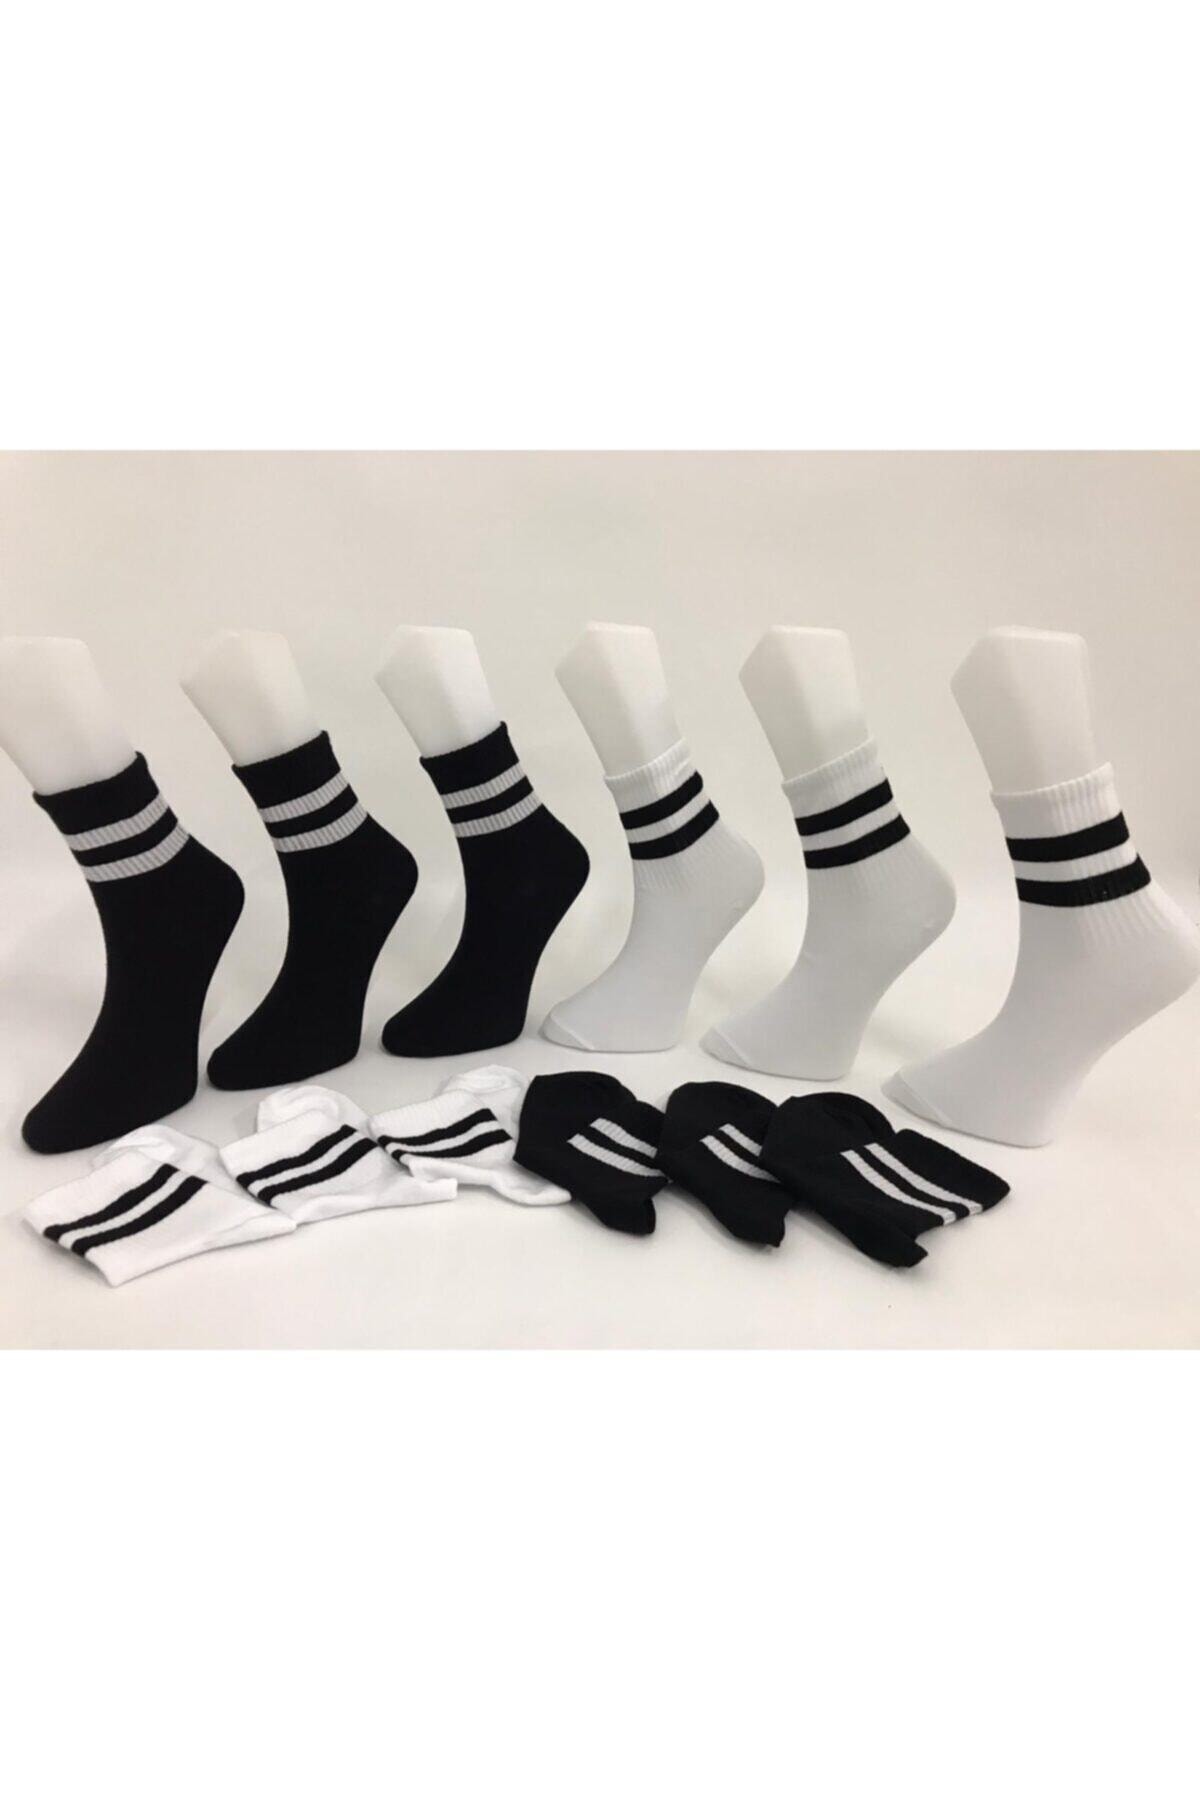 AYMİRAY ÇORAP Unisex 6' Lı Siyah Ve Beyaz Çizgili Tenis Çorabı